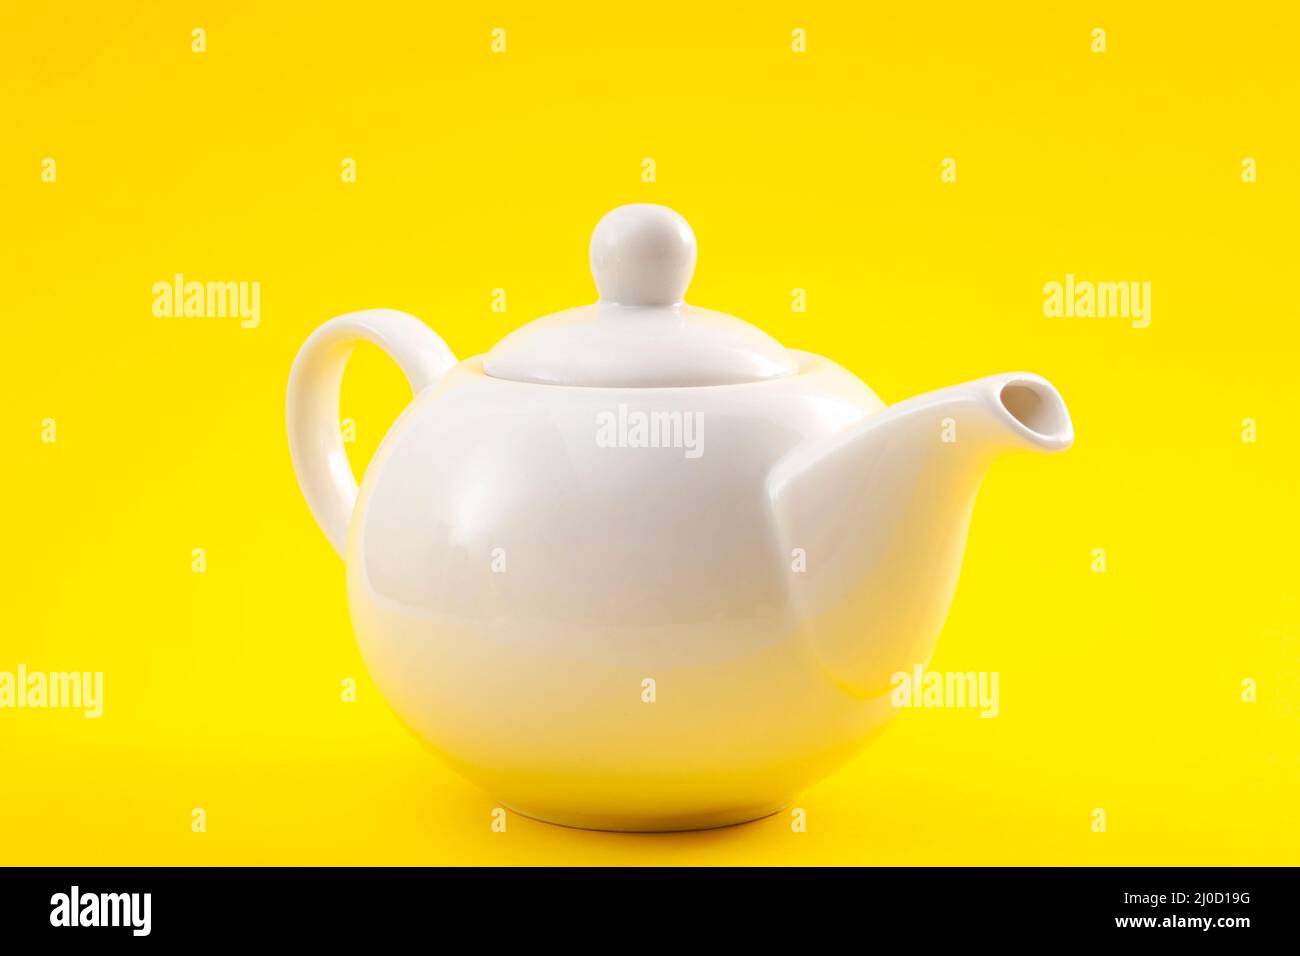 Théière en céramique blanche, cafetière ou bouilloire à thé isolée sur fond jaune Banque D'Images